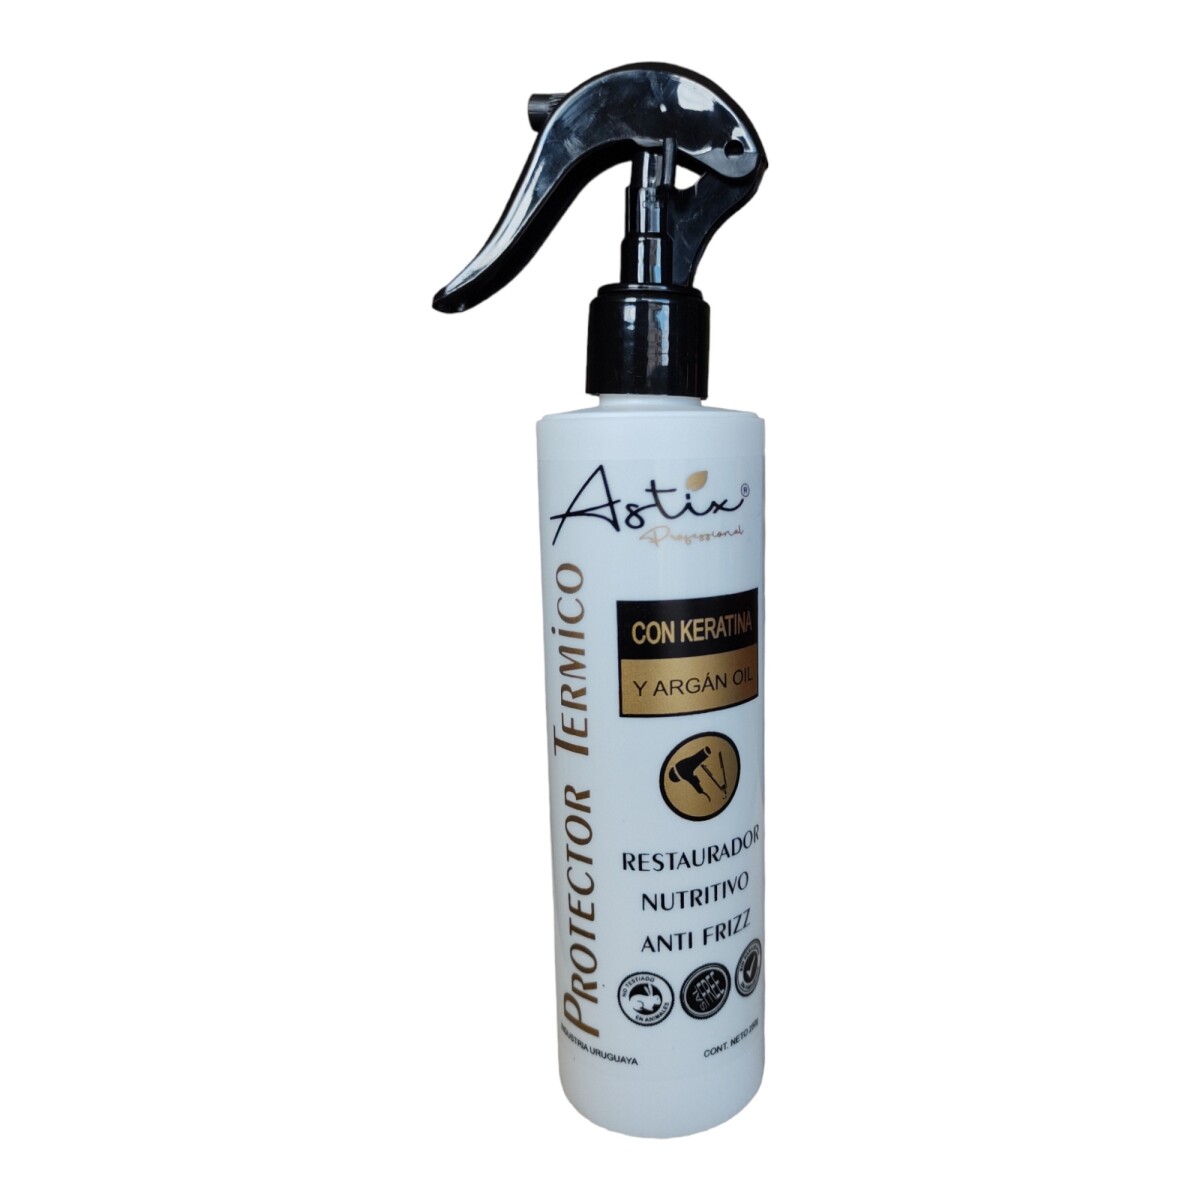 Astix Protector Termico Con Keratina Y Argan Oil 250gr 